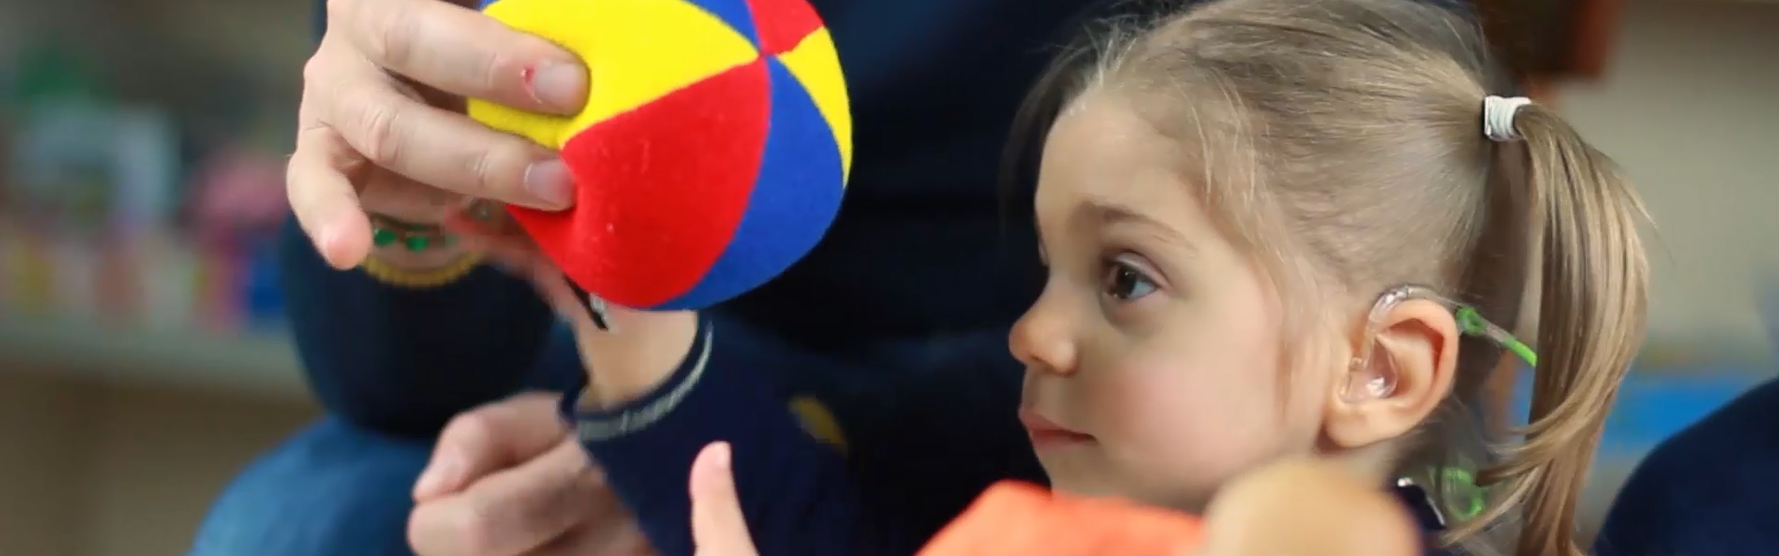 La piccola Sveva, bambina con sindrome di Charge, prende una pallina di stoffa colorata dalle mani del papà